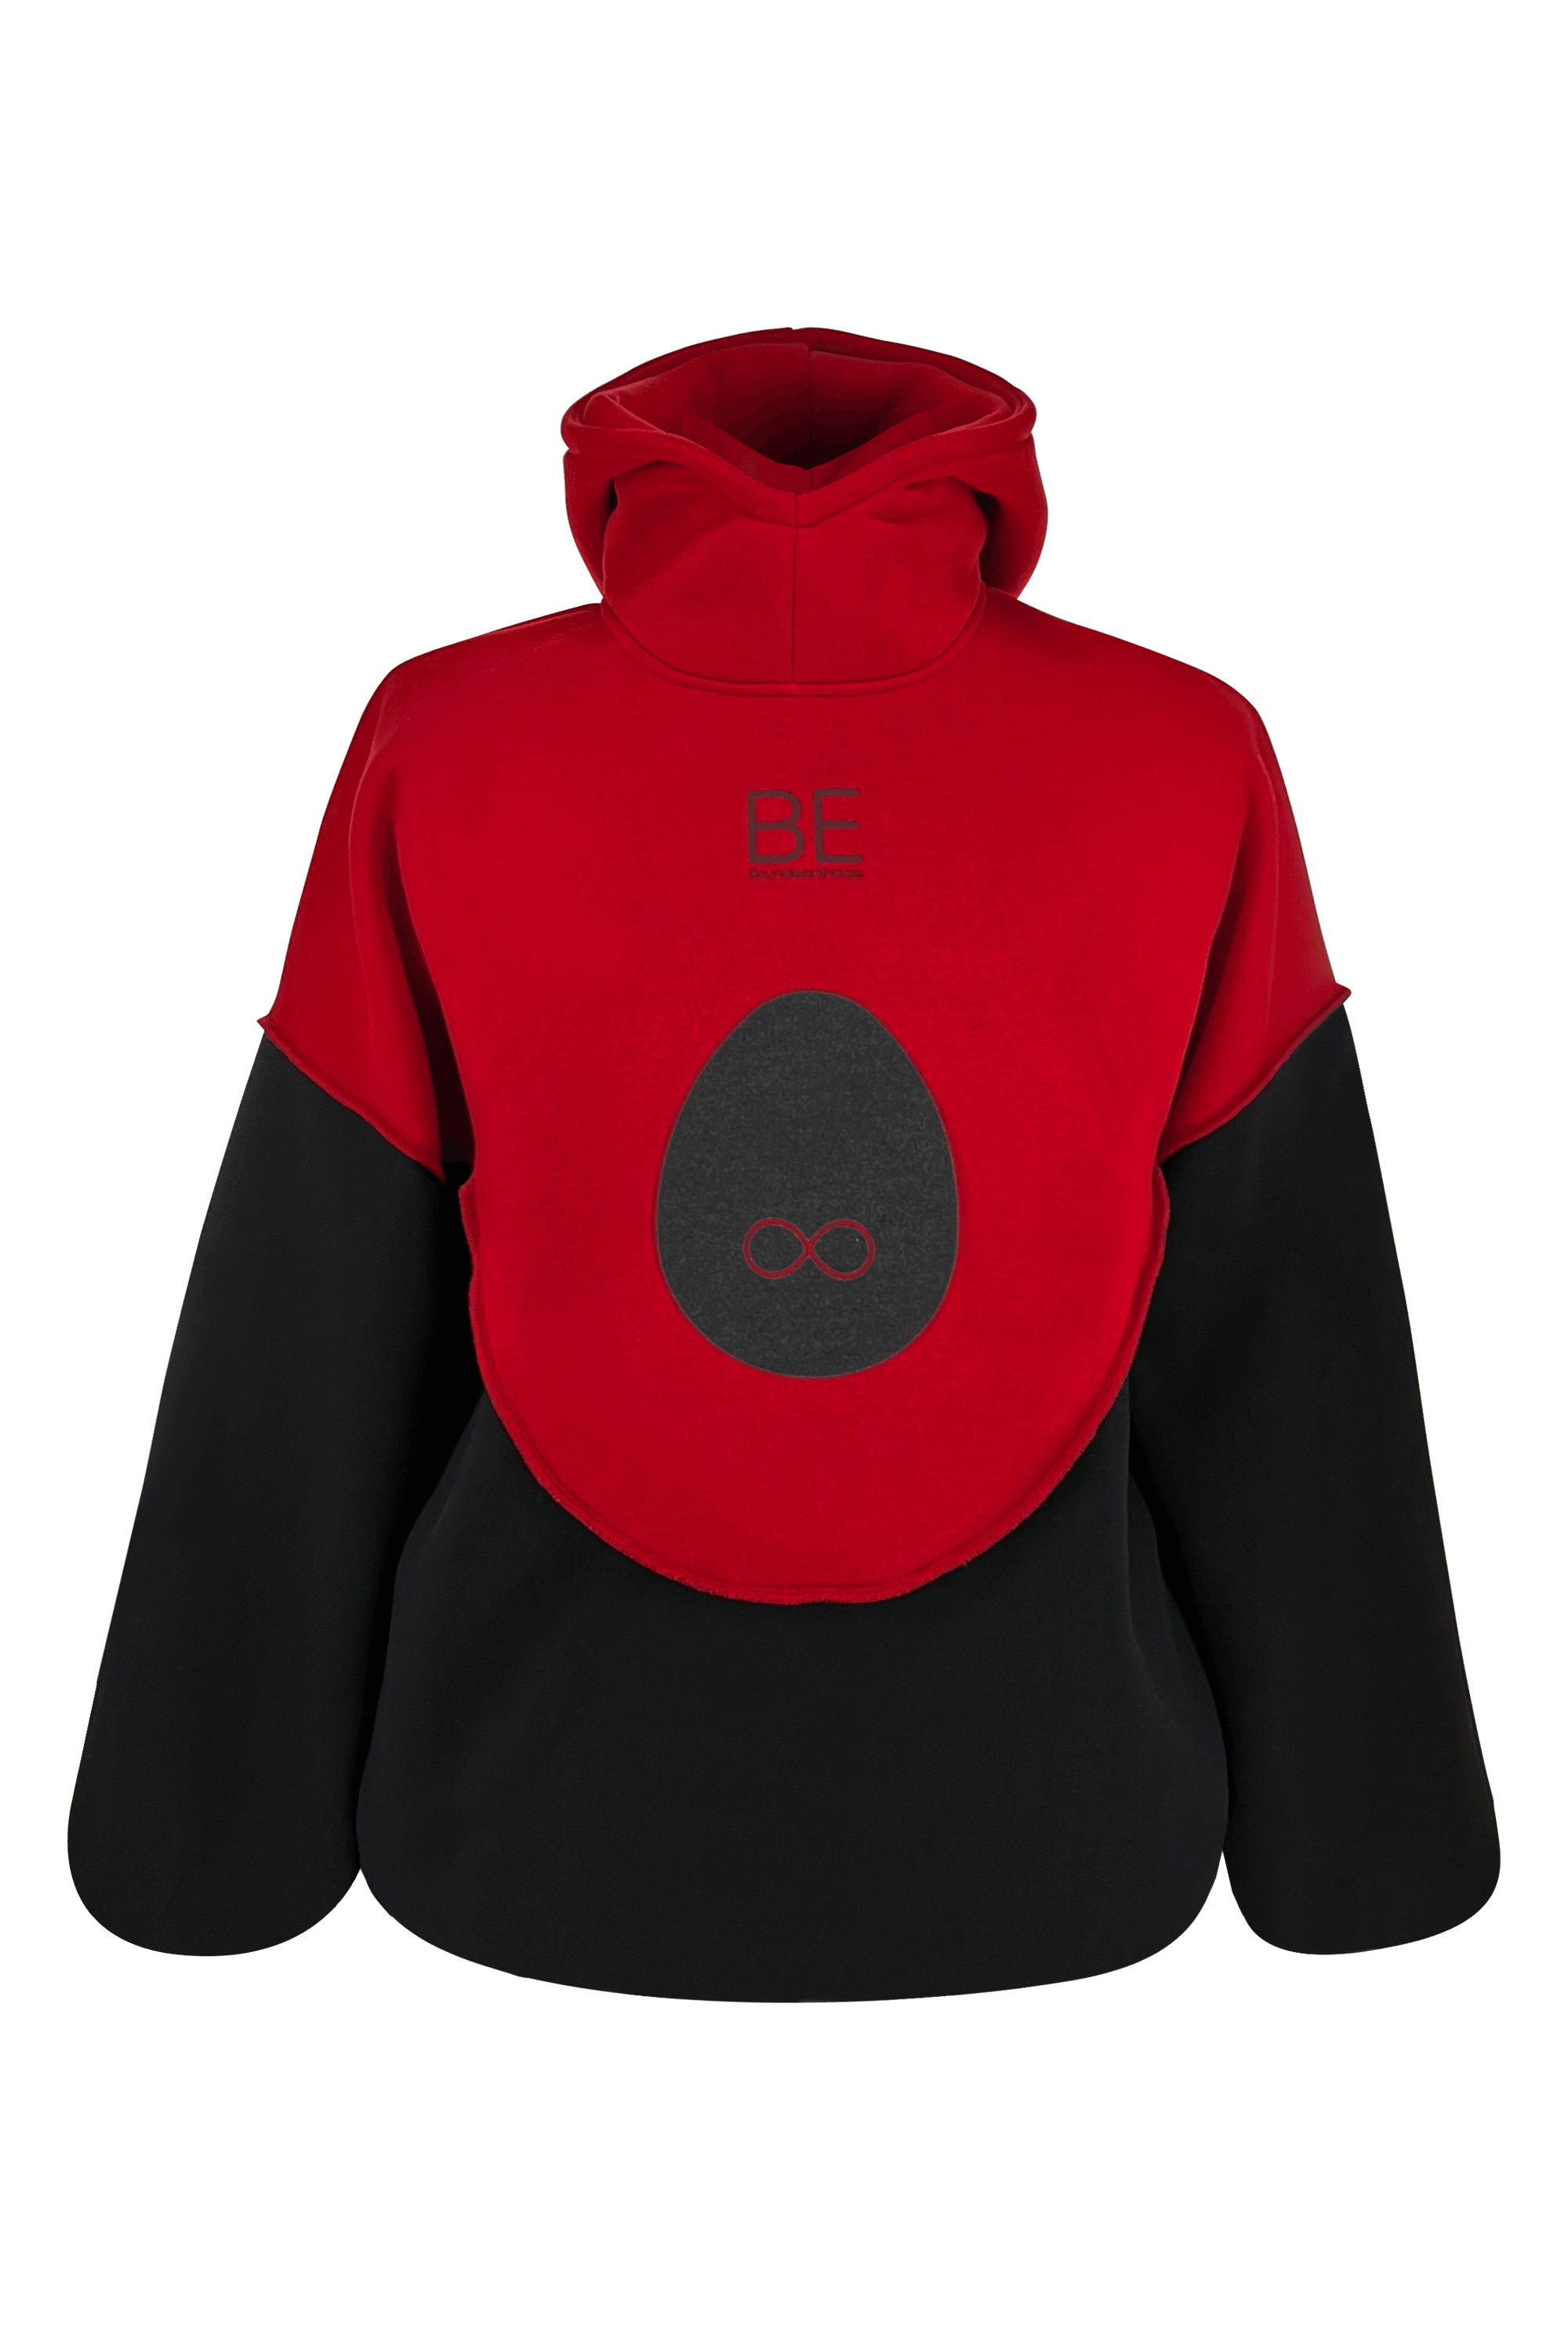 BE Black Red hoodie